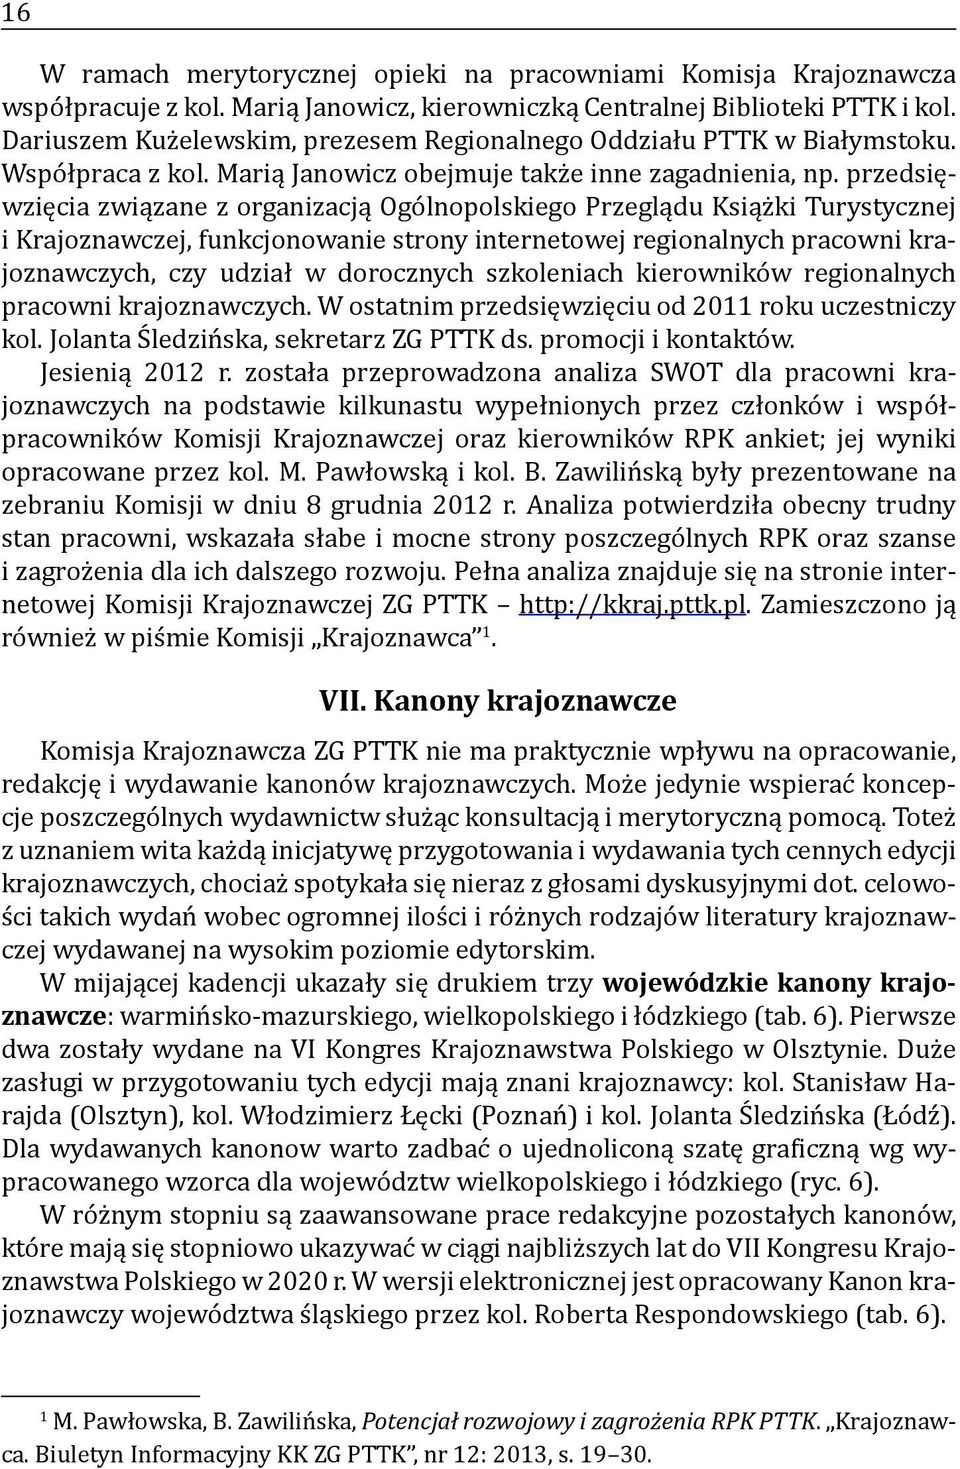 przedsięwzięcia związane z organizacją Ogólnopolskiego Przeglądu Książki Turystycznej i Krajoznawczej, funkcjonowanie strony internetowej regionalnych pracowni krajoznawczych, czy udział w dorocznych